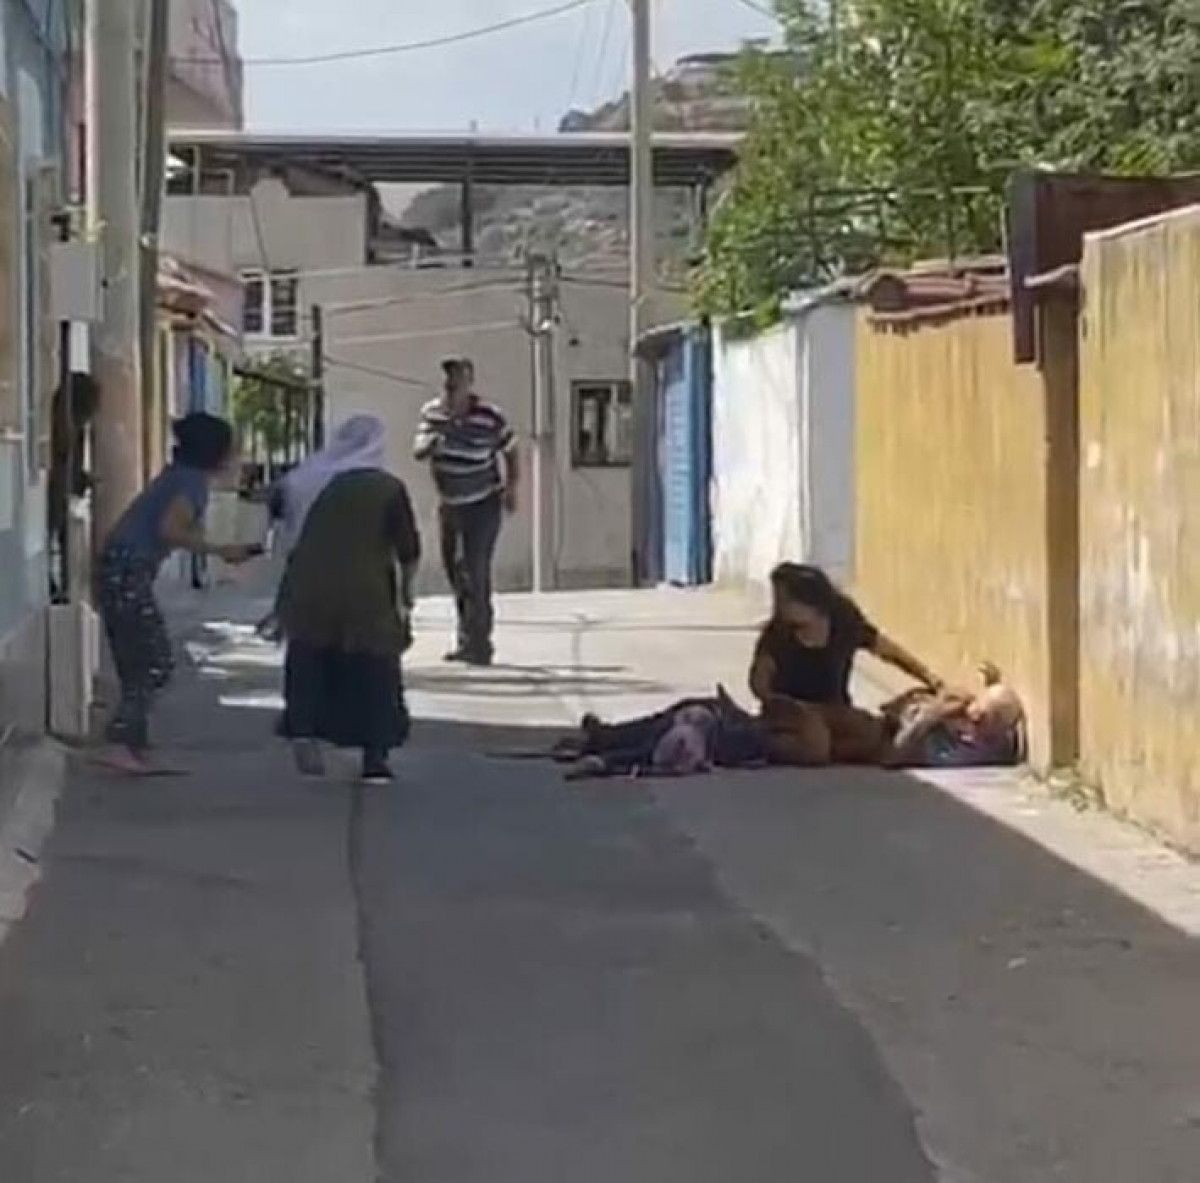 İzmir de köpek tartışması: Aileden 3 kişiyi öldürdü #1